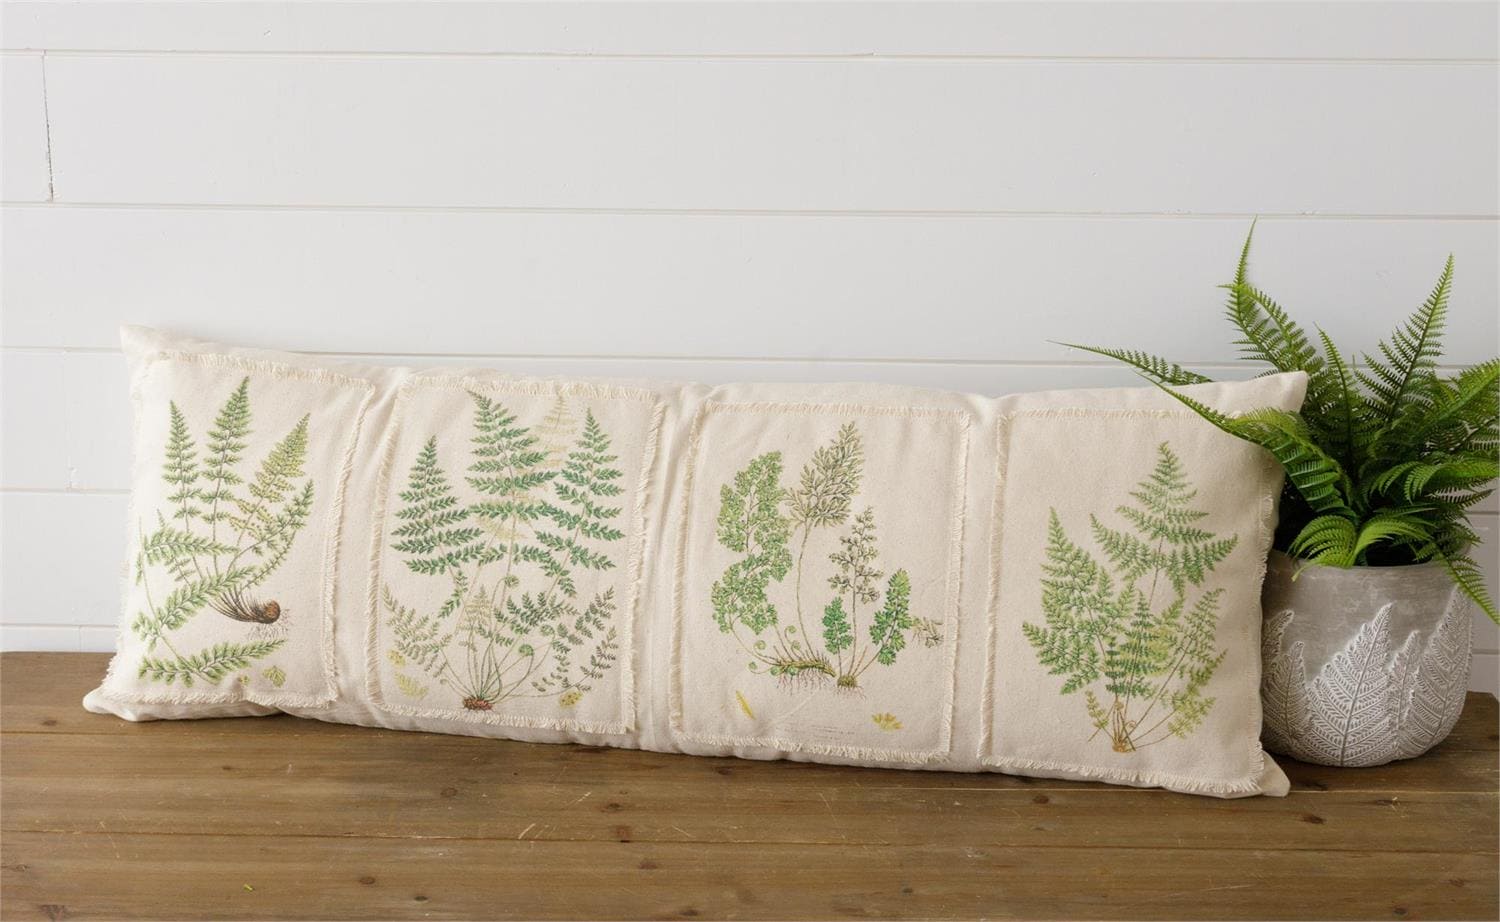 Lumbar Pillow - Botanical Ferns